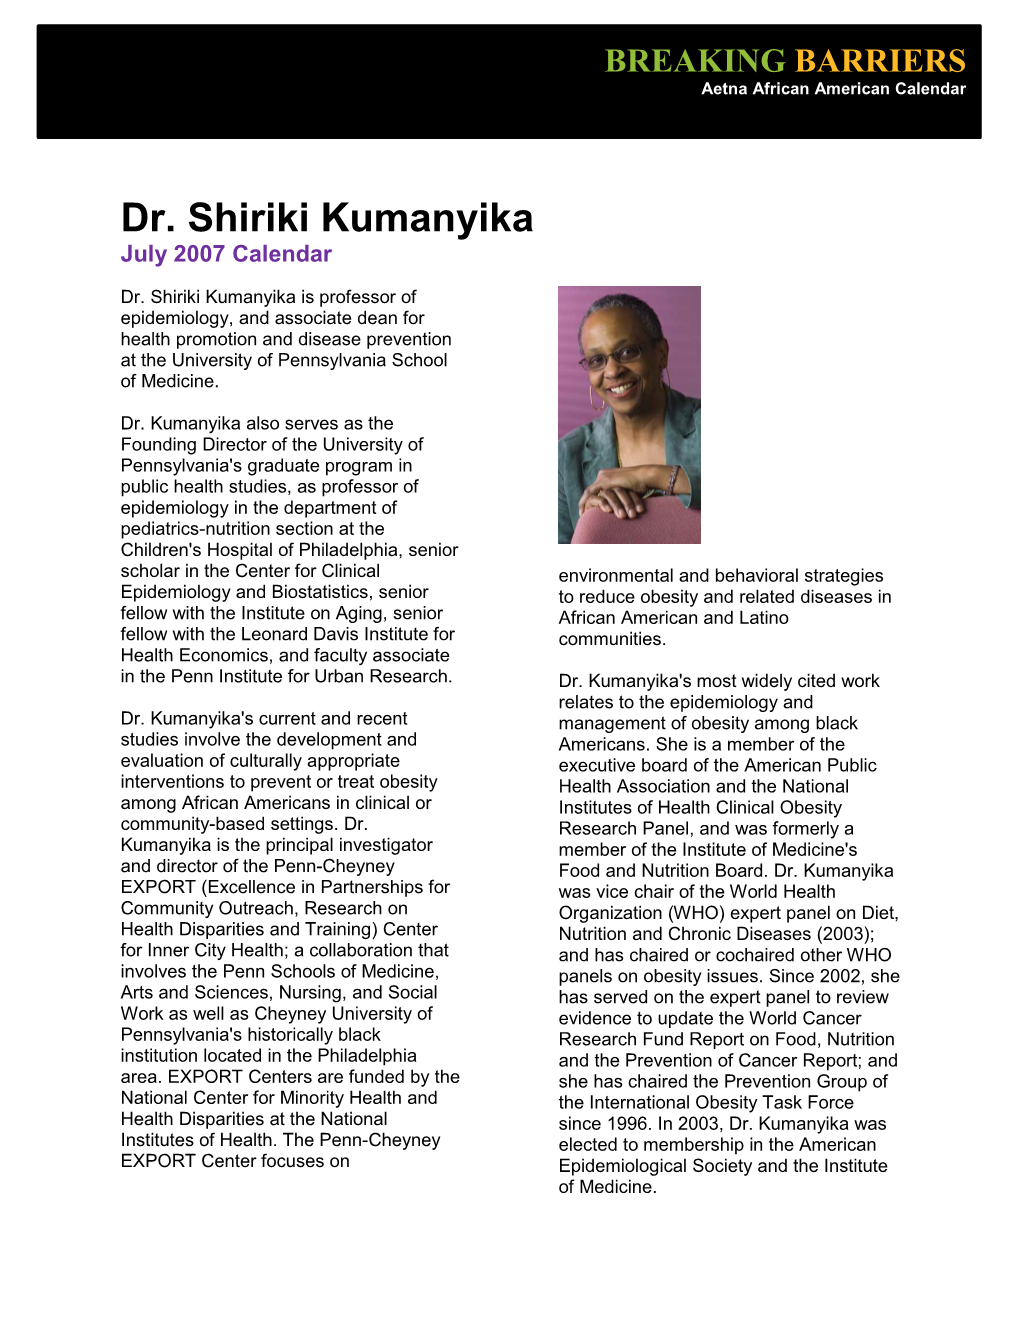 Biography for Dr. Shiriki Kumanyika